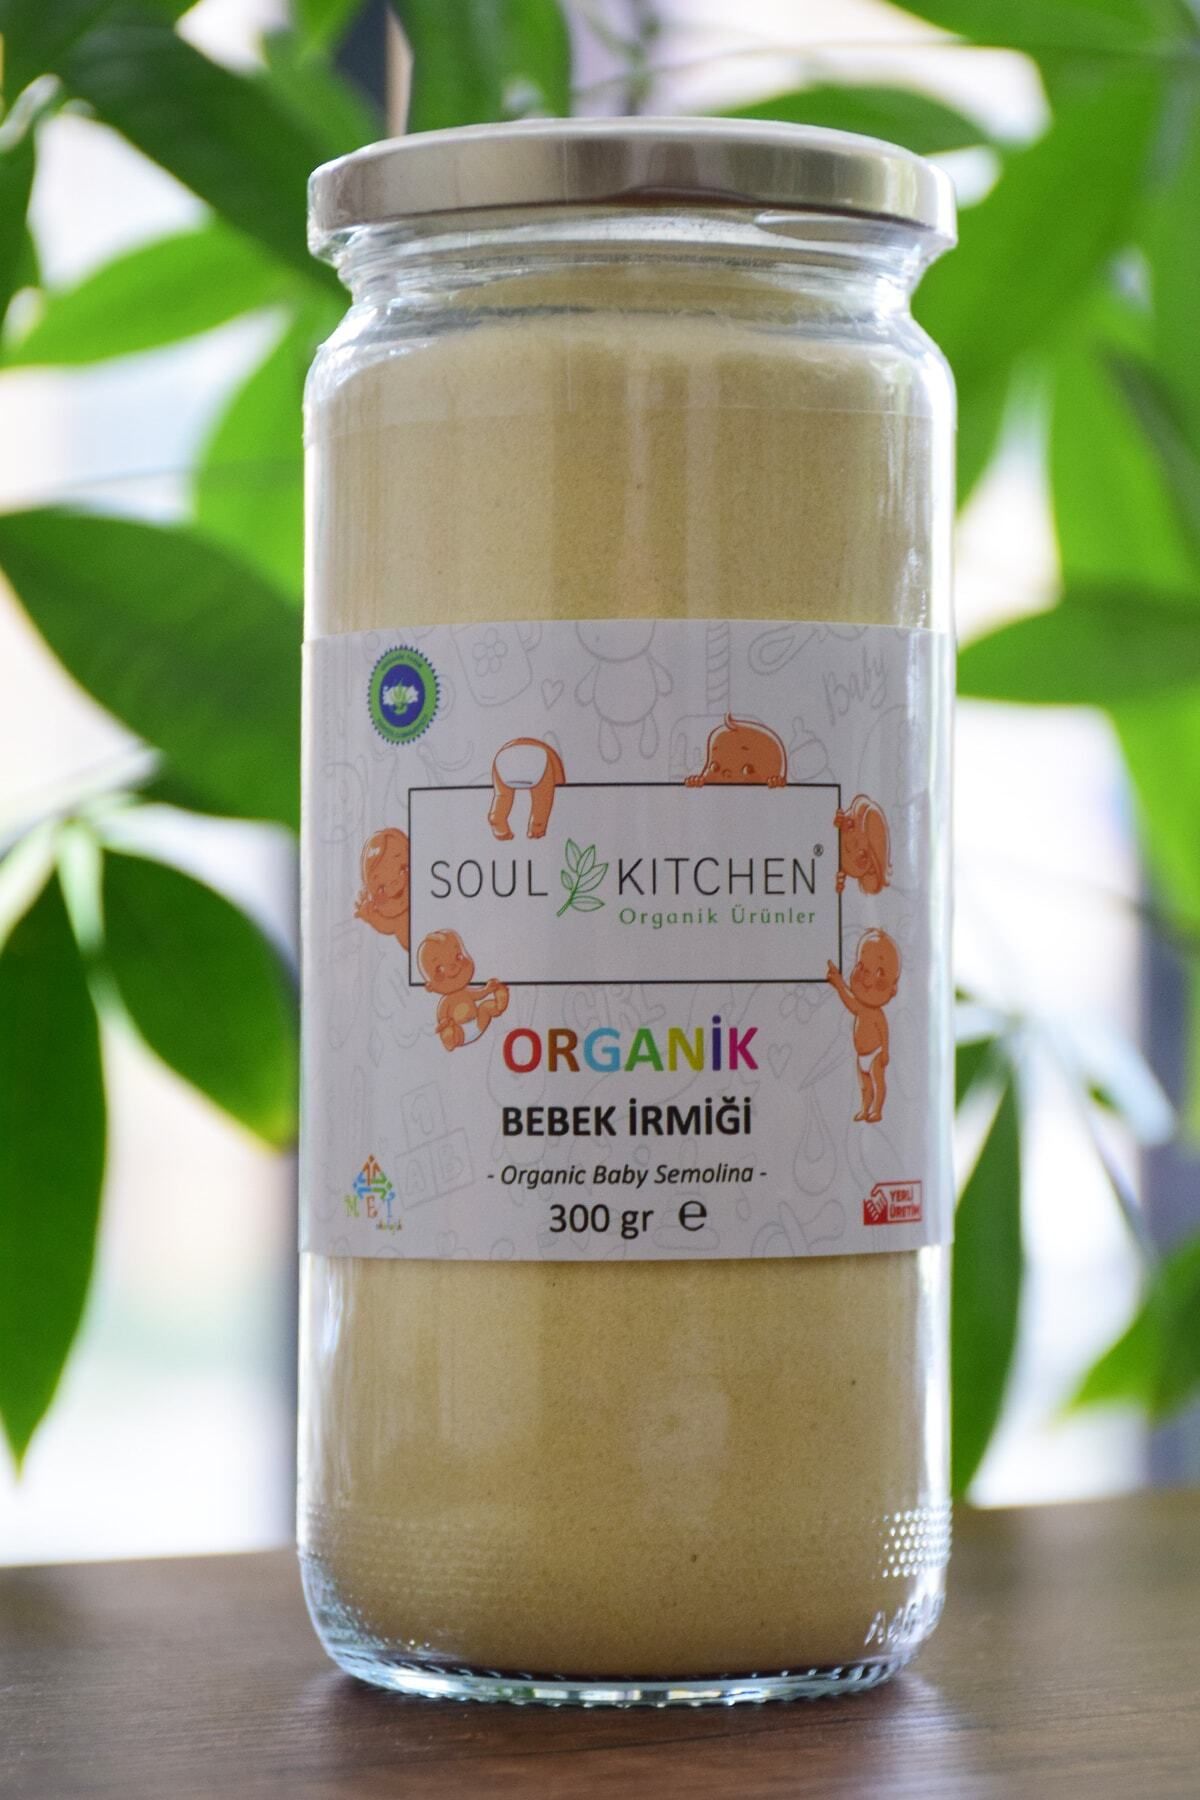 Soul Kitchen Organik Ürünler Organik Bebek Irmiği 300 gr